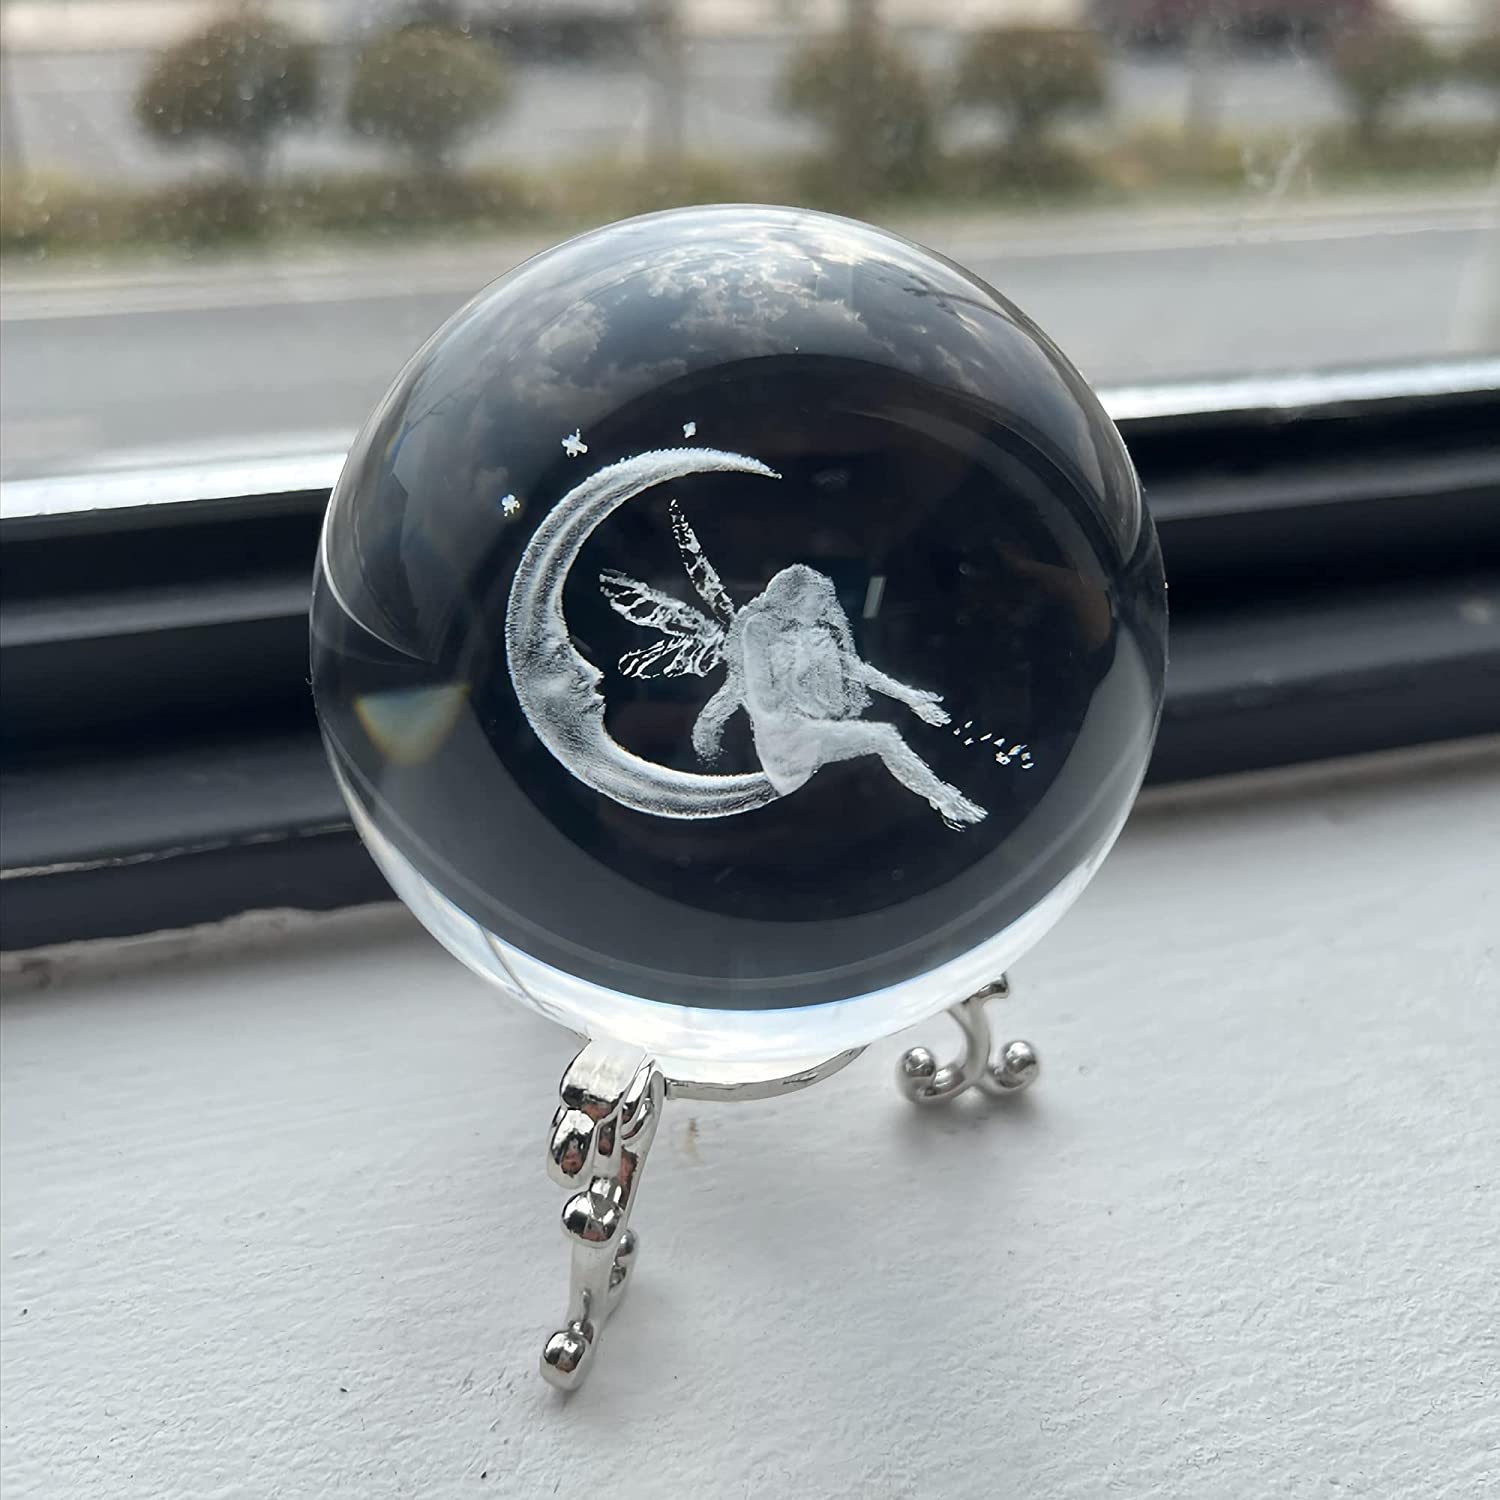 Soporte de bola de cristal lunar (3.15 pulgadas), bola de cristal 3D con  luz LED, bola de cristal transparente K9 para decoración del hogar